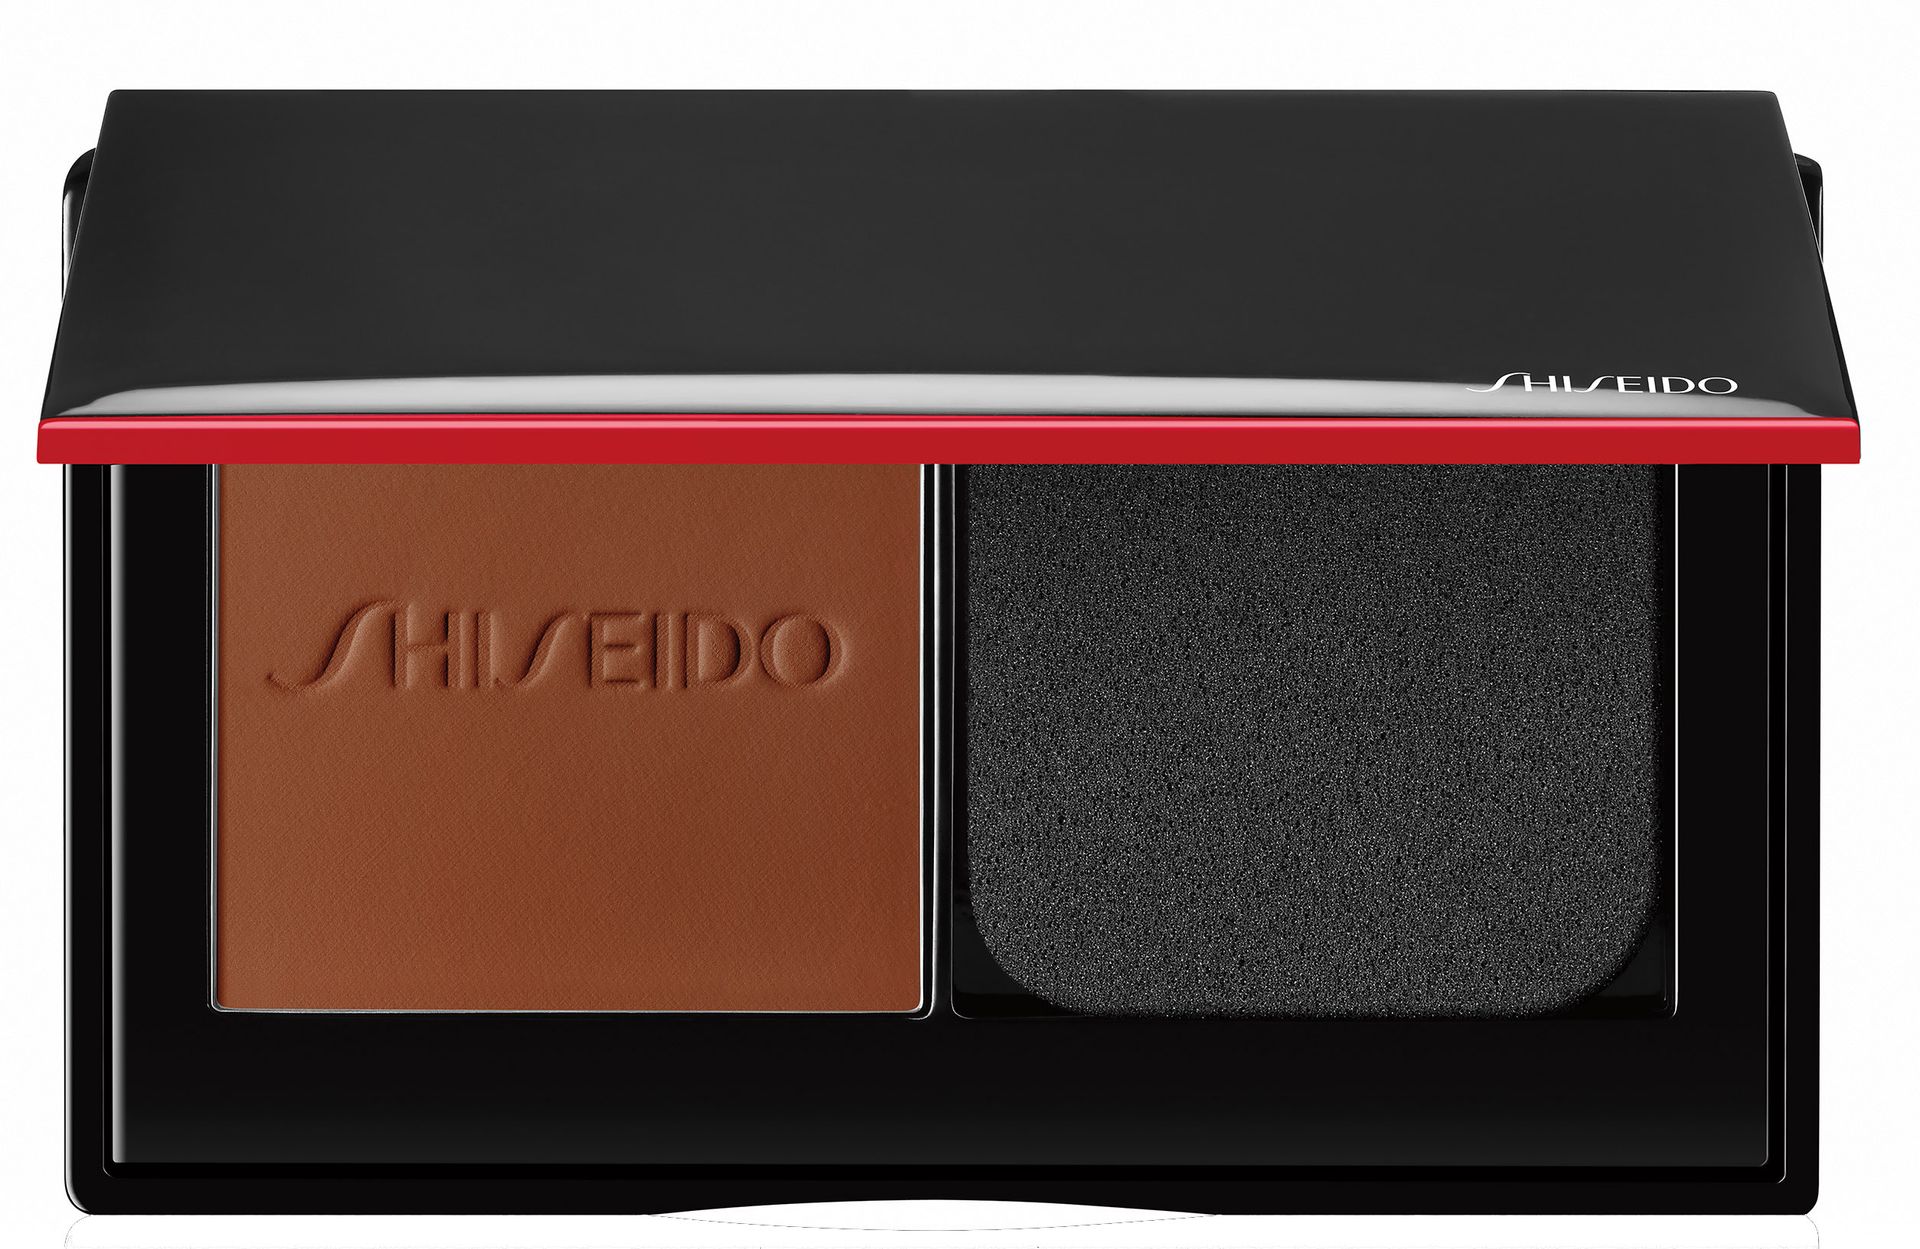 Shiseido Synchro Skin Self-Refreshing Powder Foundation 510 Henna